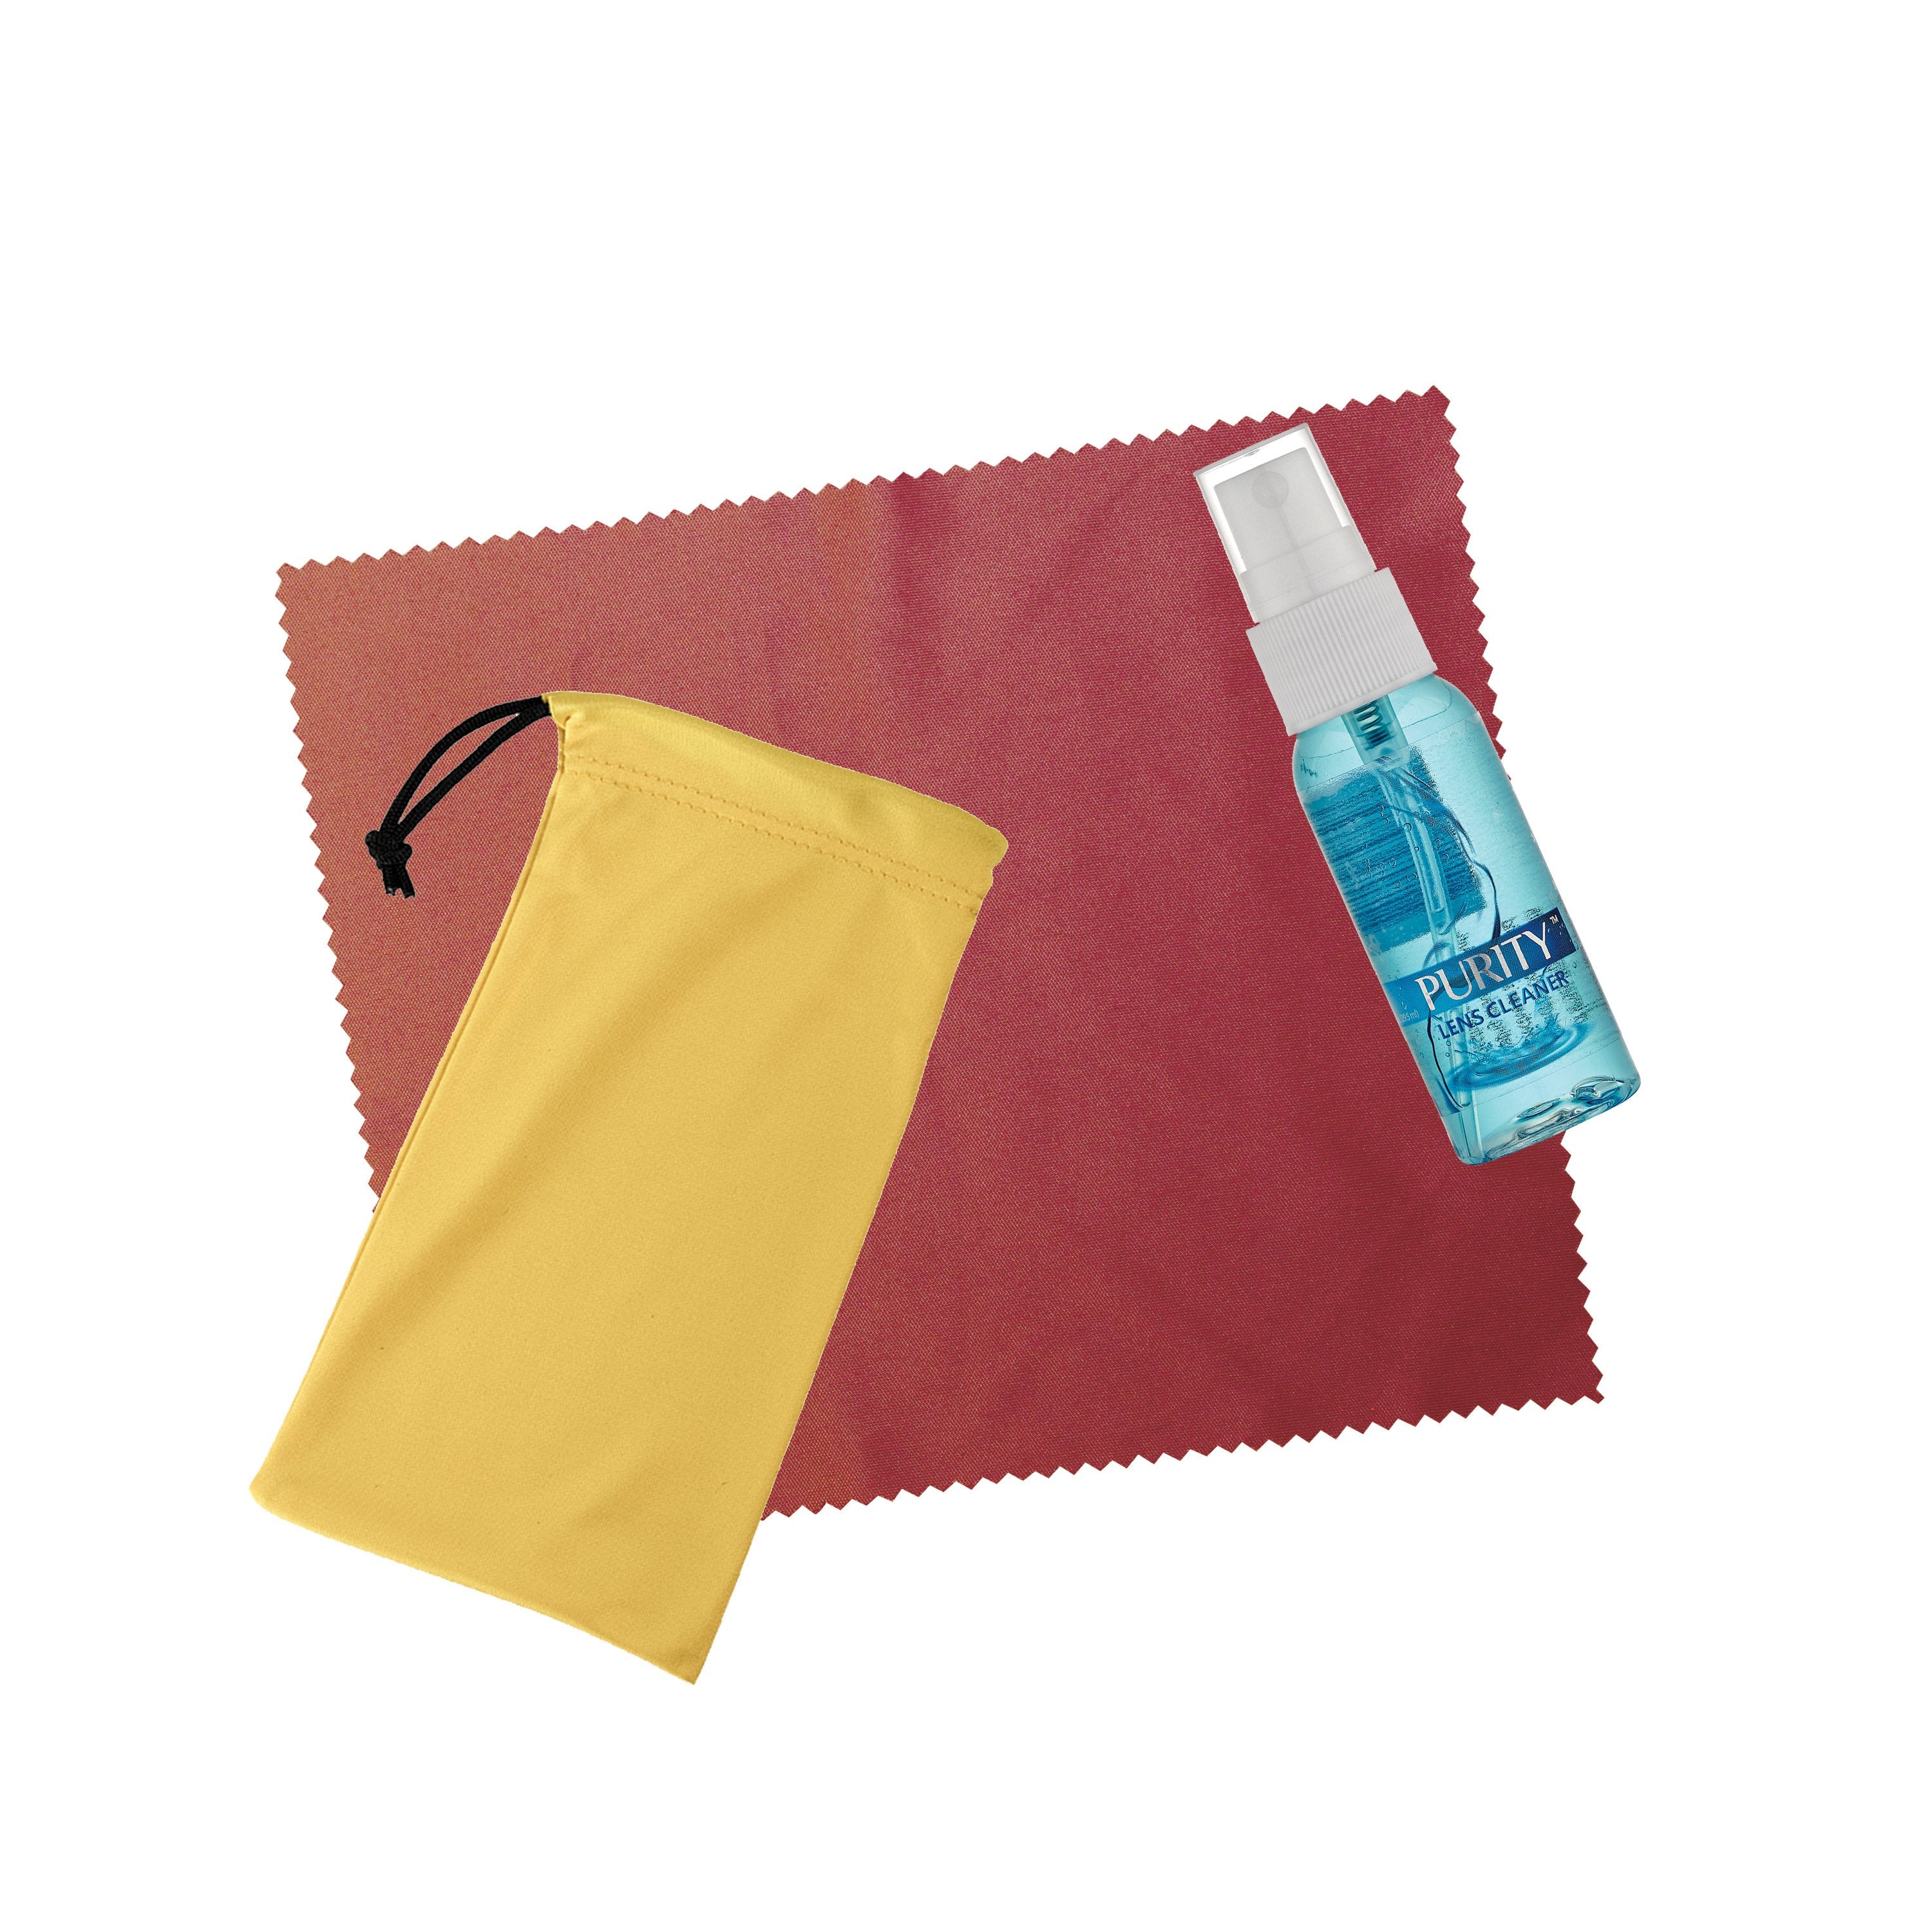 2 oz. Purity™ Spray Pouch Kits